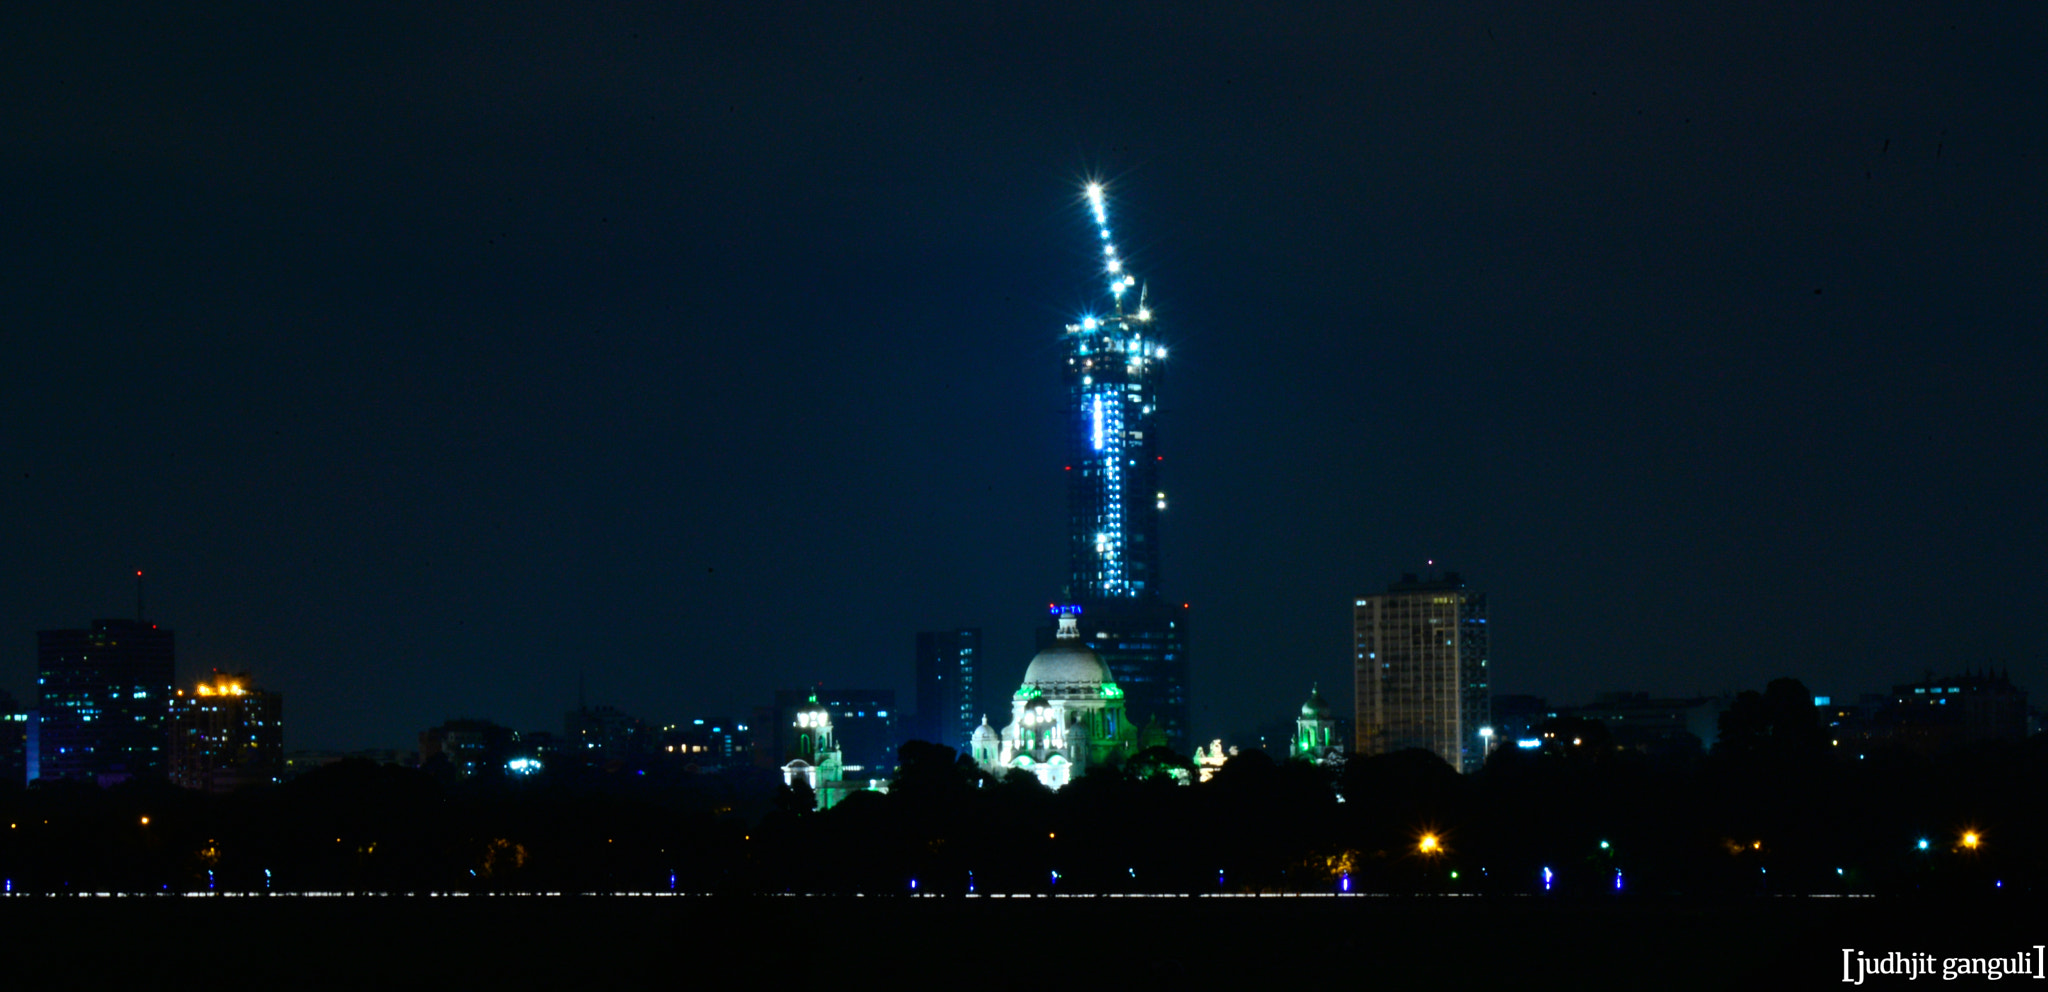 Nikon D610 + AF Zoom-Nikkor 28-80mm f/3.3-5.6G sample photo. Victoria memorial lit up at night photography